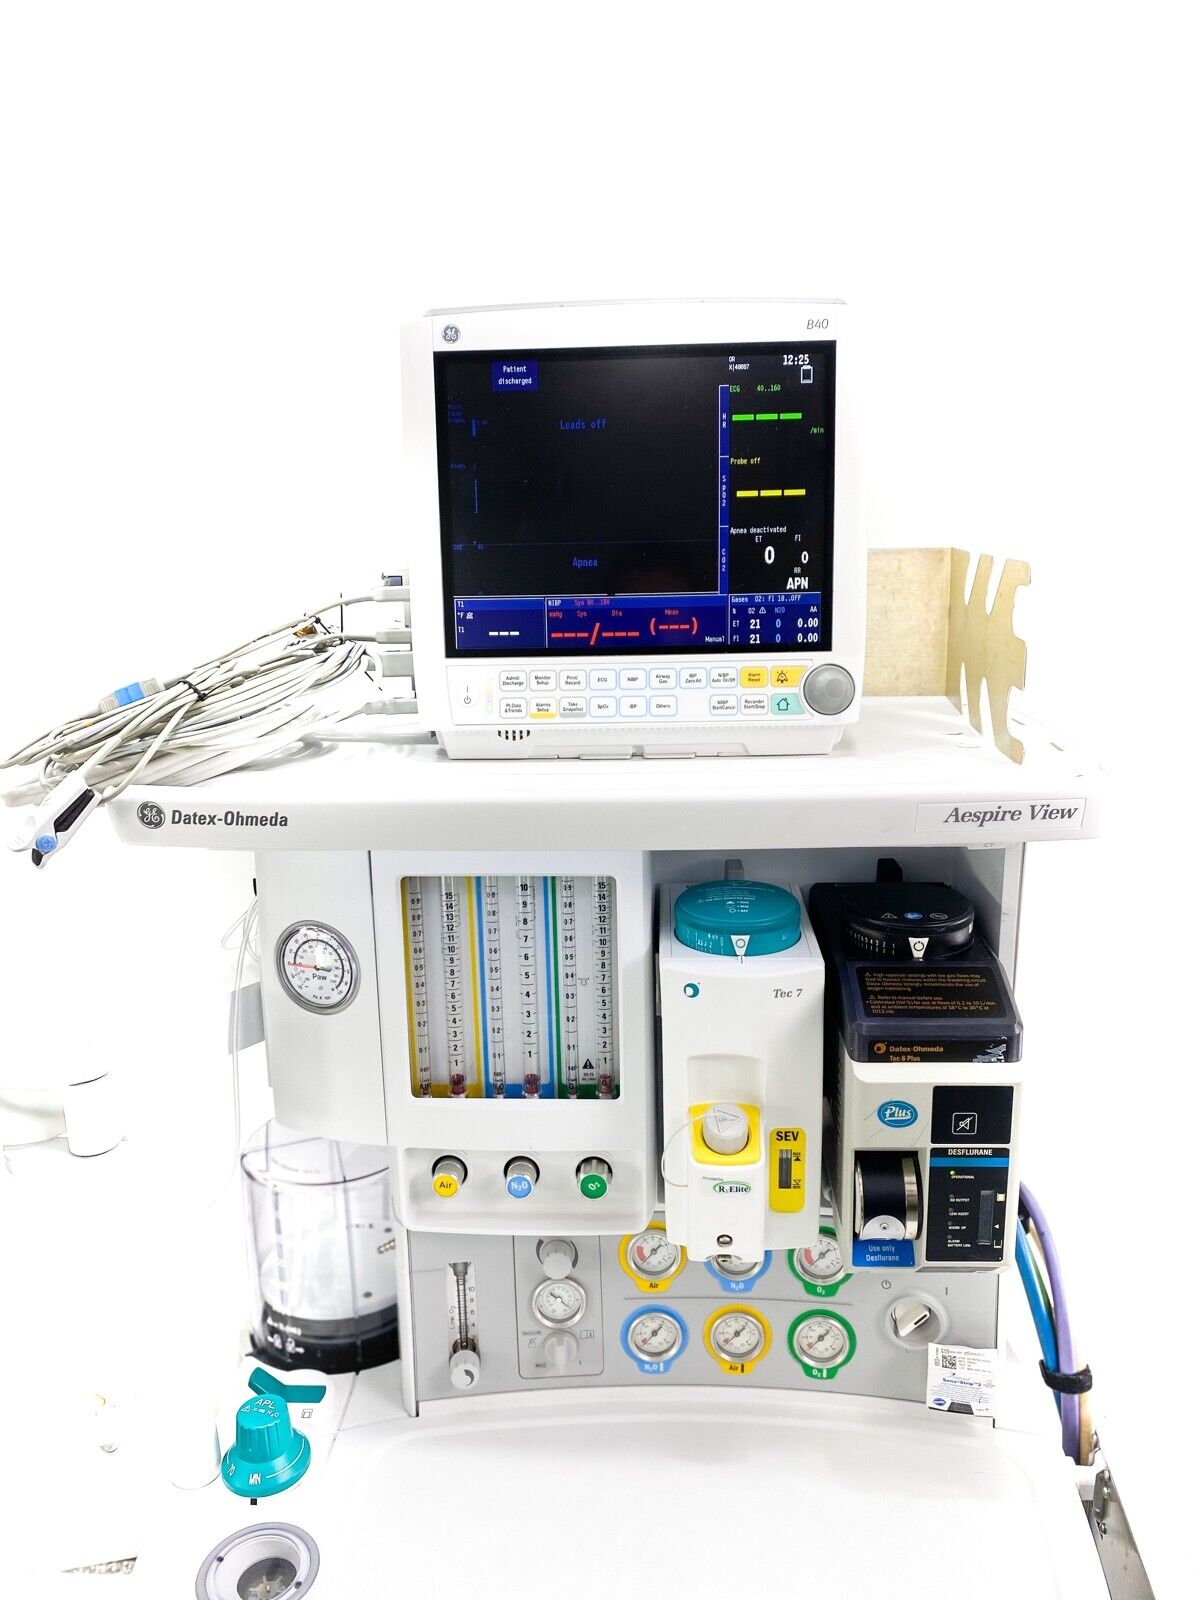 GE Datex-Ohmeda Aespire View Anesthesia Machine - GE B40 Patient Monitor